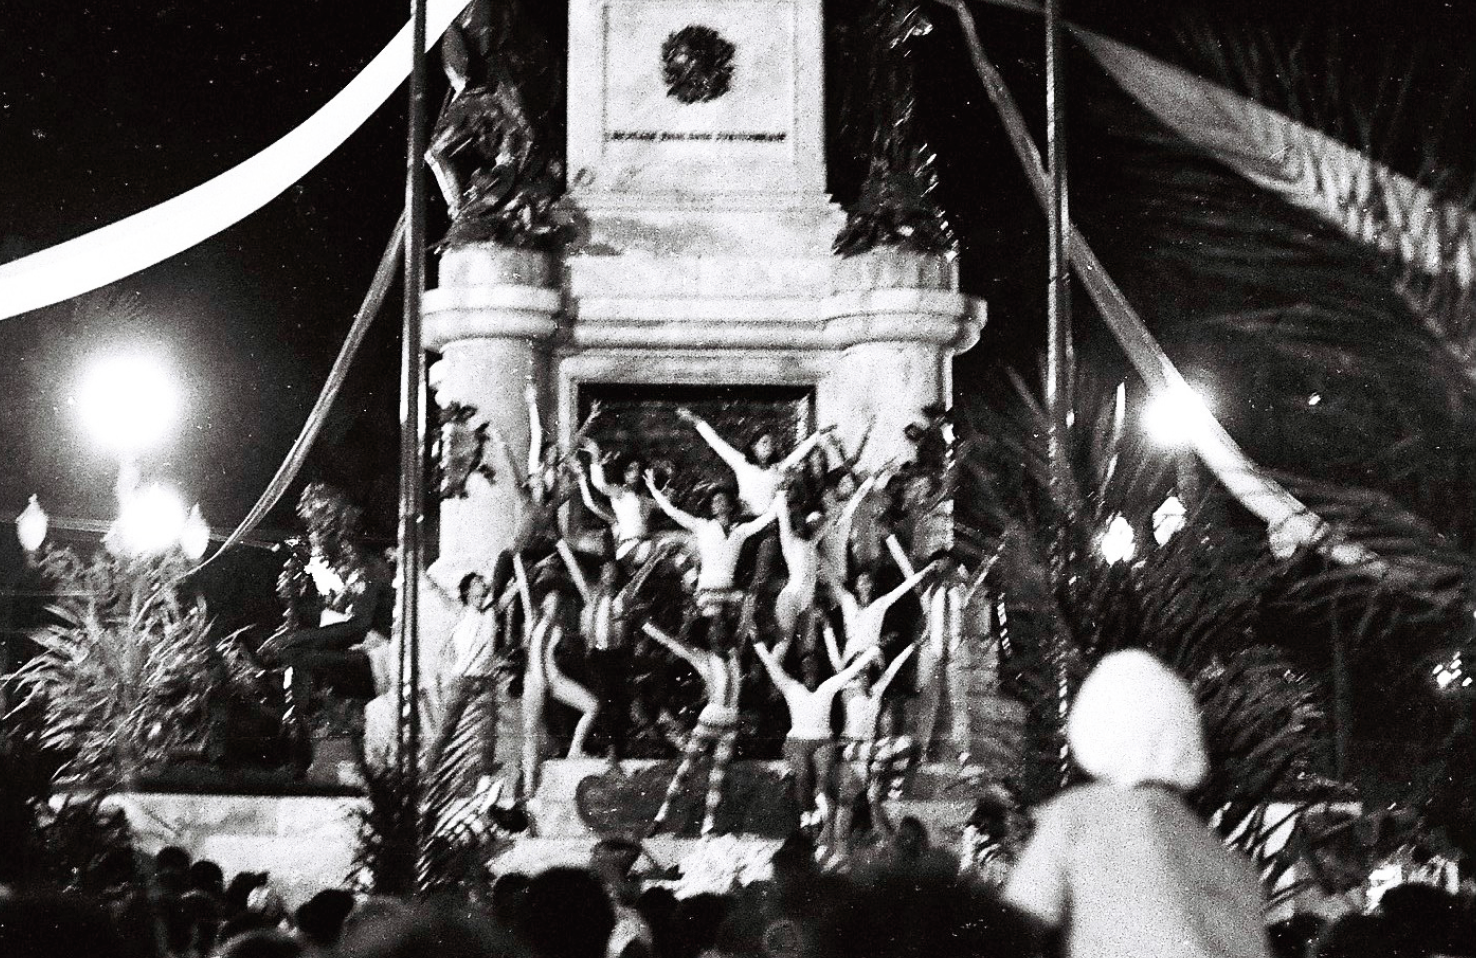 Fotografia em preto e branco. Um grupo de bailarinos com os braços estendidos para cima em uma pose. Ao fundo, um monumento. Ao redor, as pessoas de uma plateia. A cena é noturna, iluminada por algumas lâmpadas da via pública.